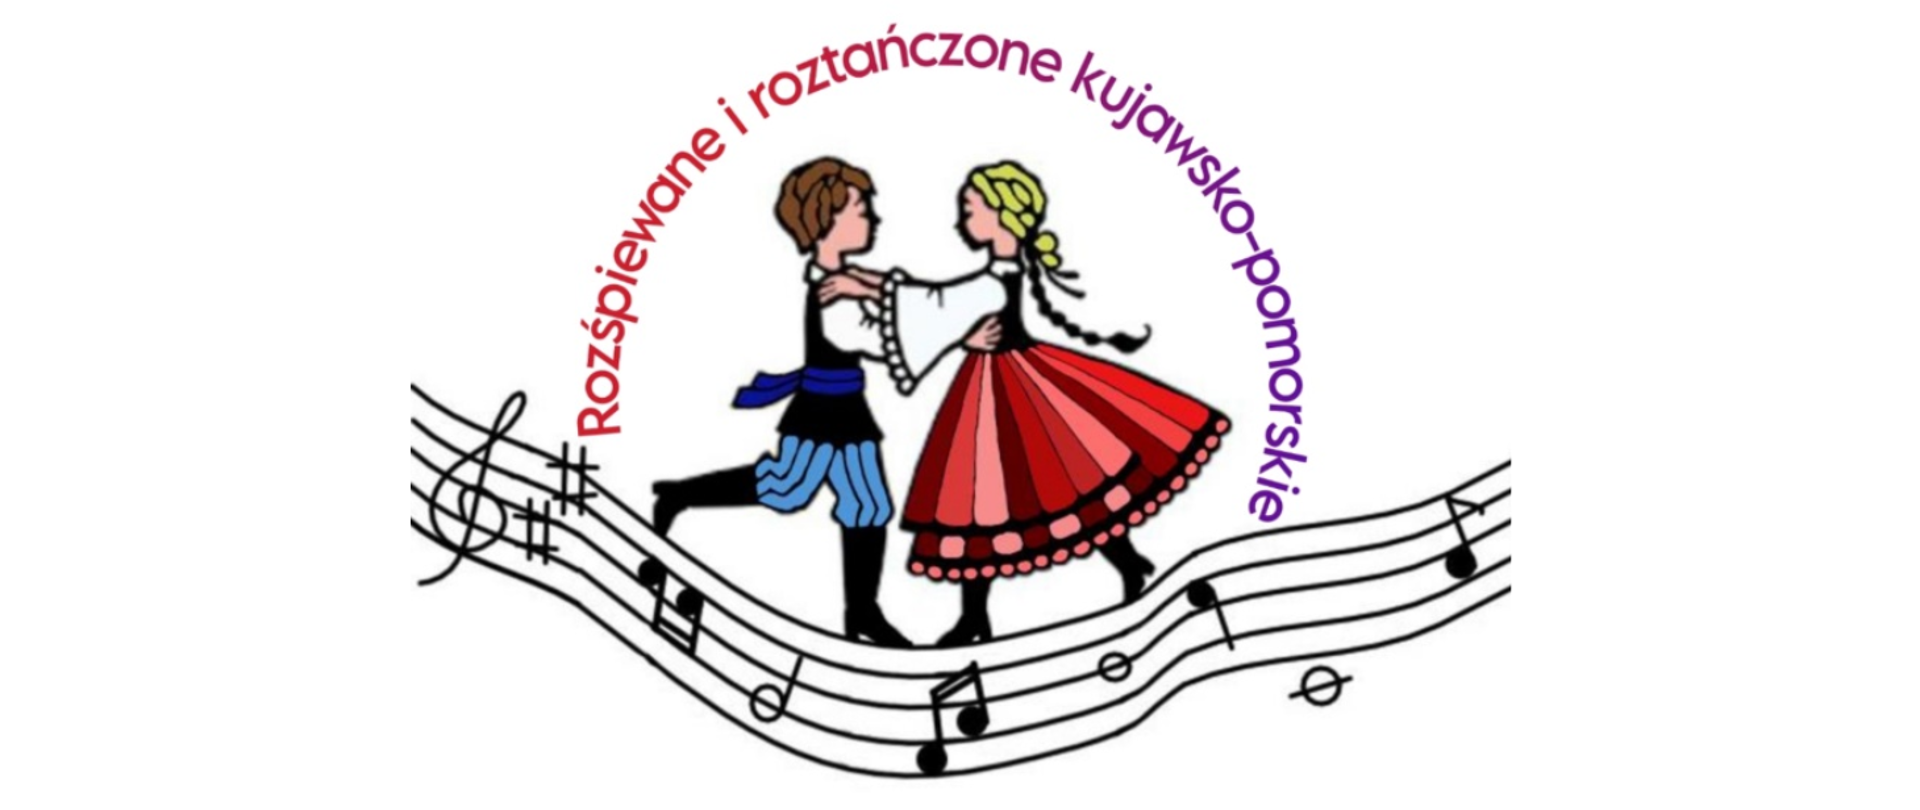 Logotyp – tańcząca para – dziewczynka i chłopiec w strojach ludowych na falistej pięciolinii. Wokół napis „Rozśpiewane, roztańczone kujawsko-pomorskie”.